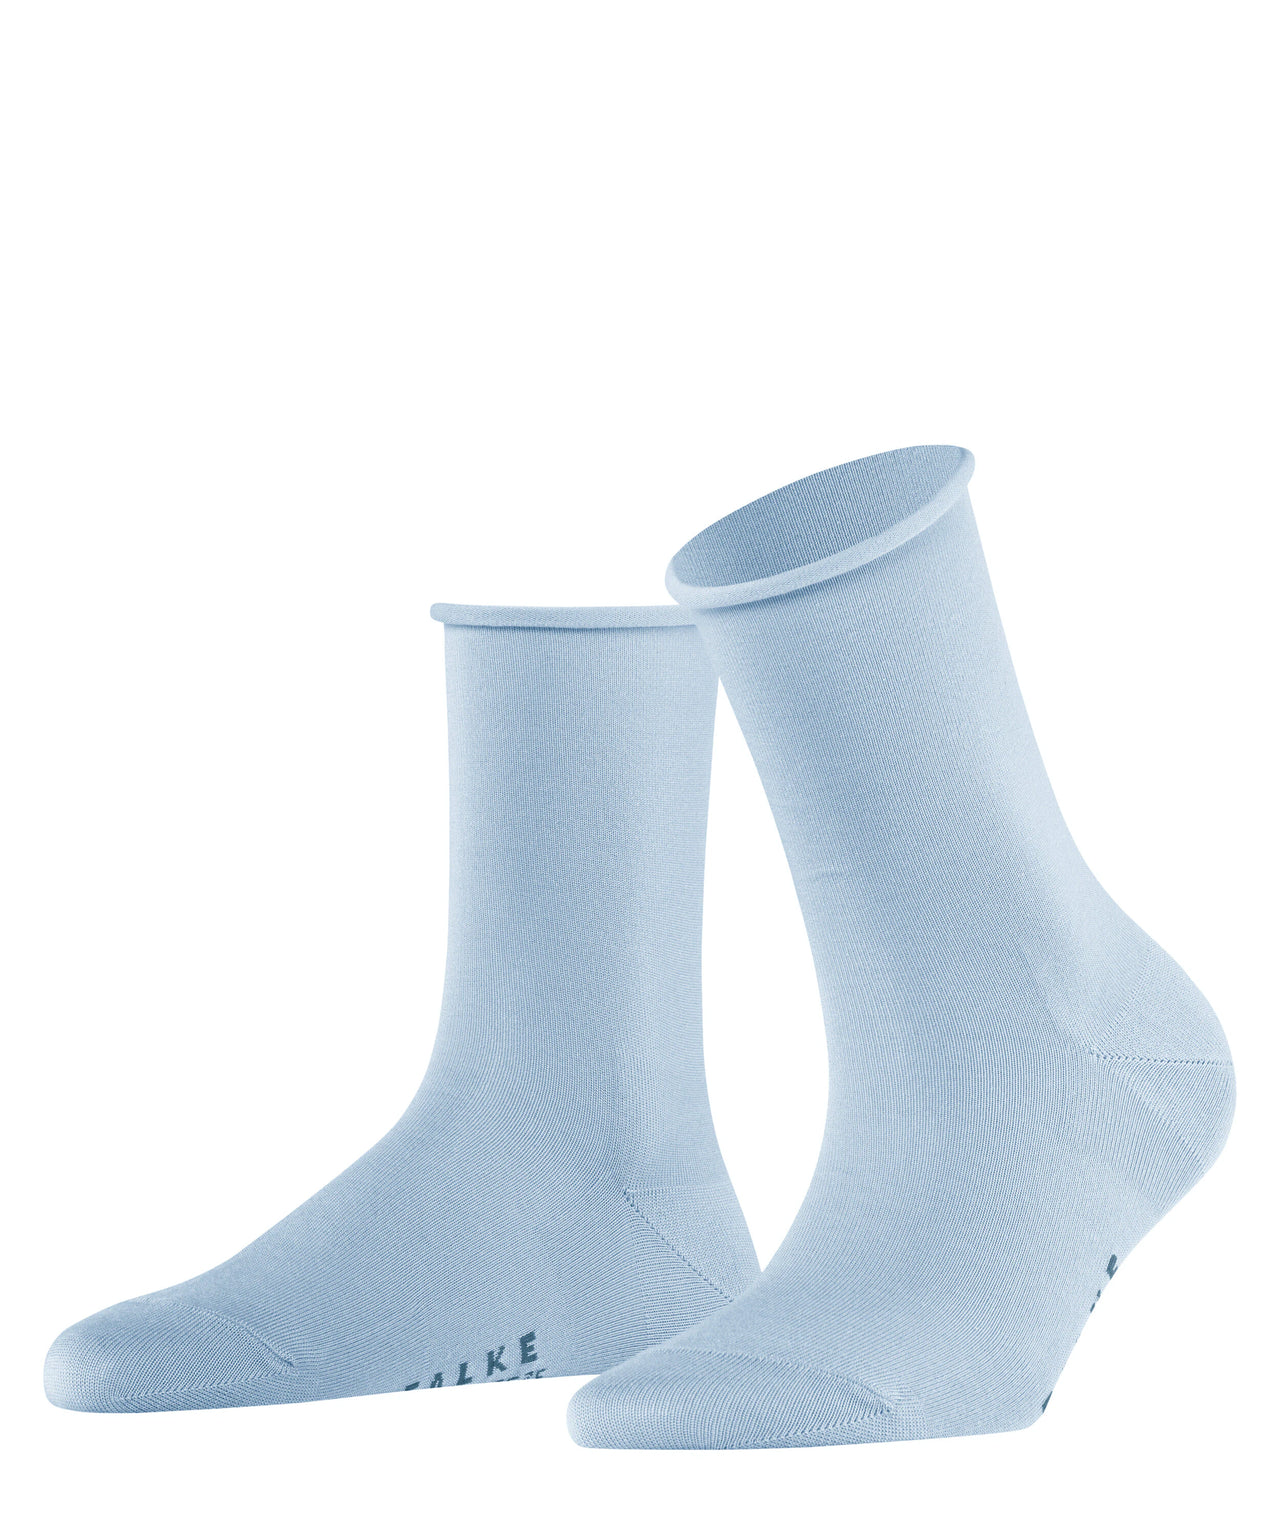 Falke Active Breeze Women's Socks - Light Blue